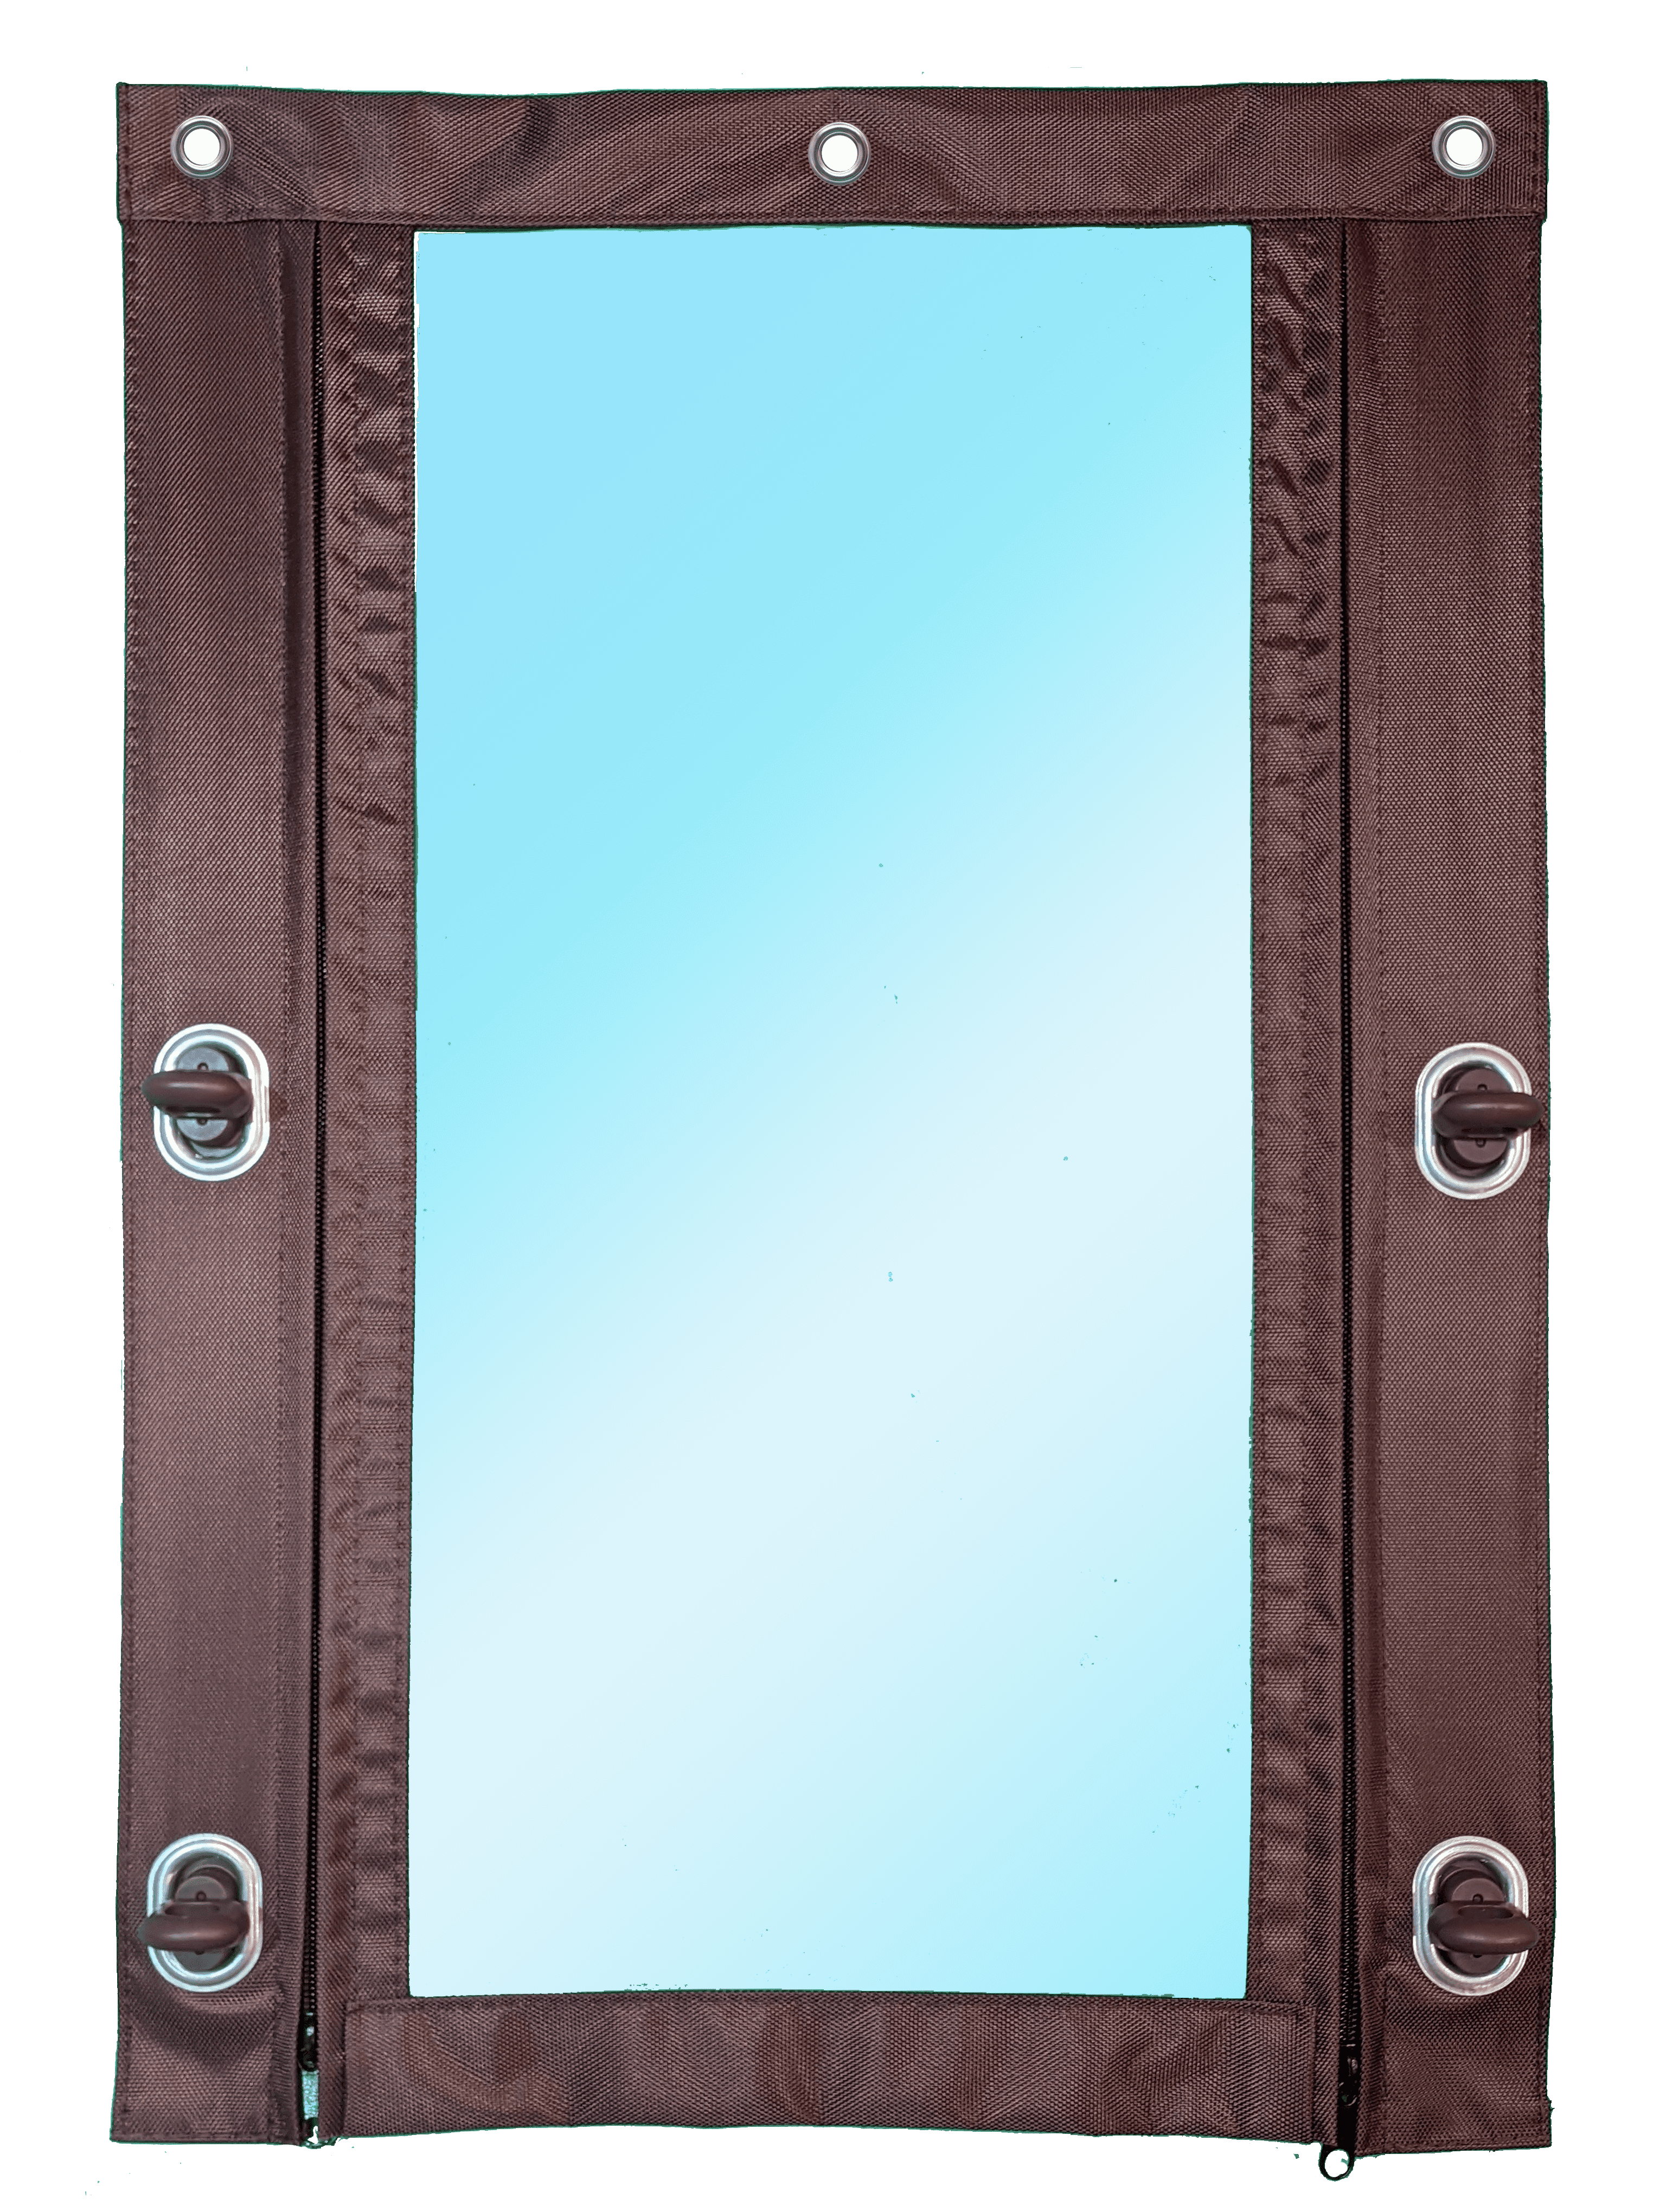 90306185 Мягкая дверь из полиуретана до минус 75°C с молниями 120х200см окантовка Оксфорд коричневый поворотная скоба (полиамид) STLM-0176862 Santreyd